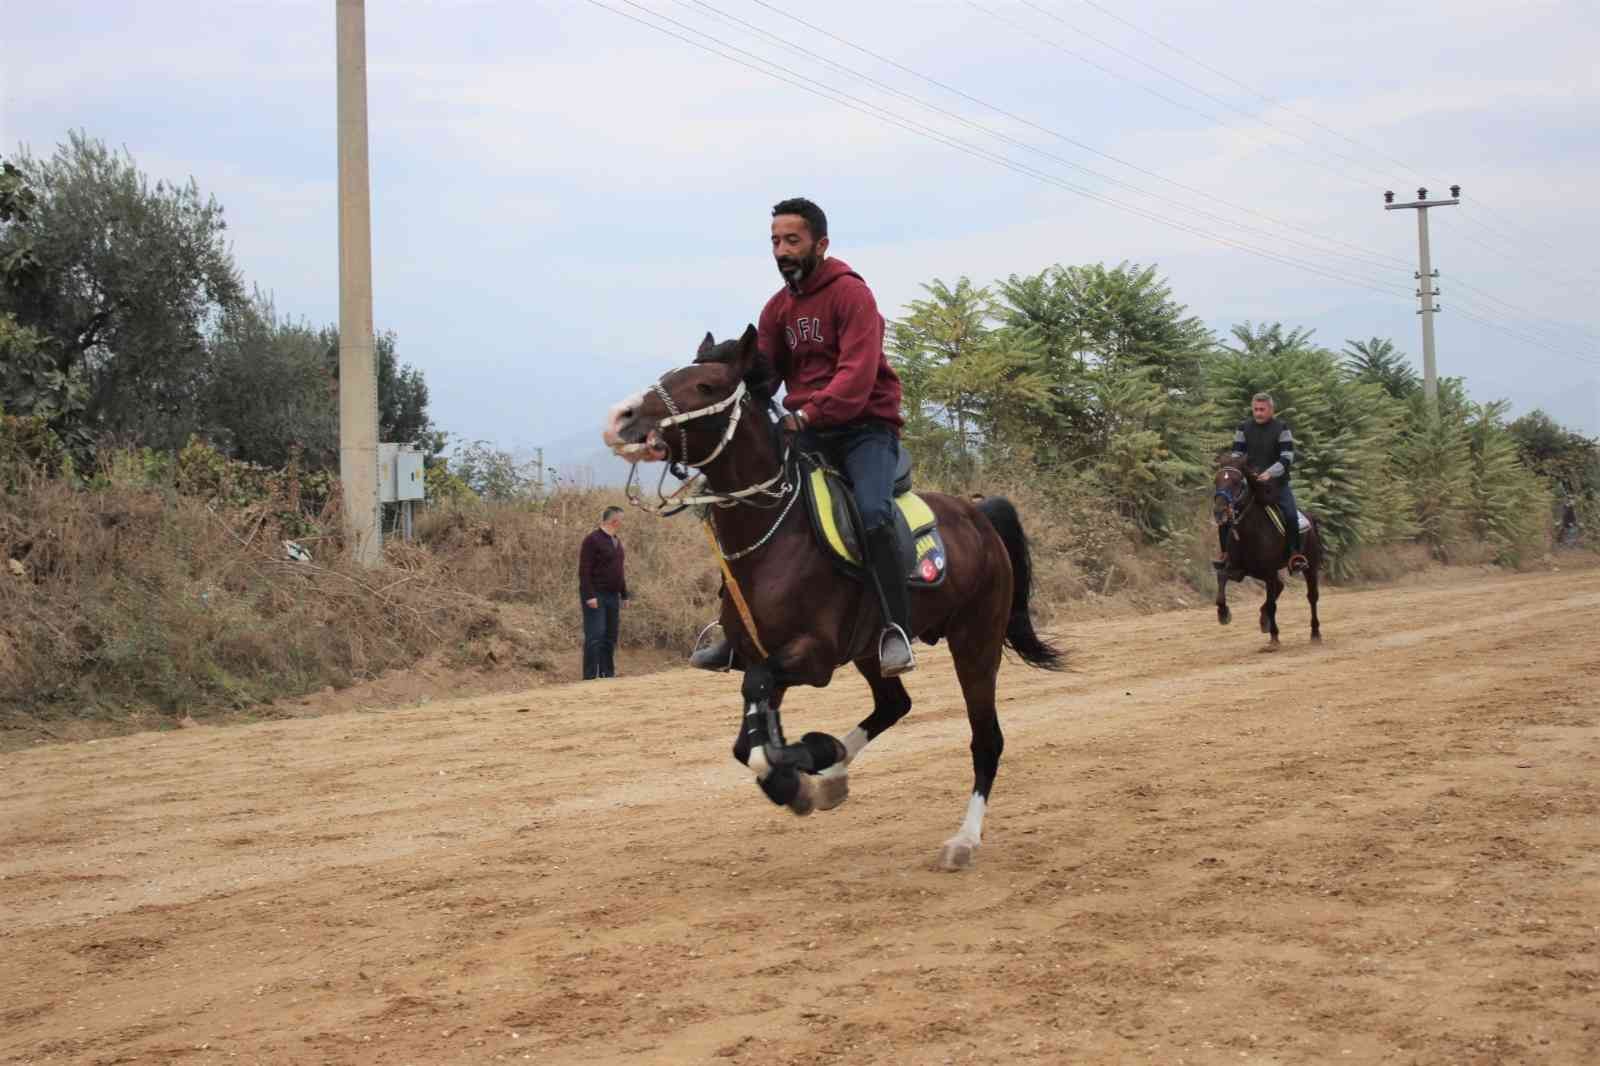 İzmir’de geleneksel rahvan at yarışları yapıldı #izmir